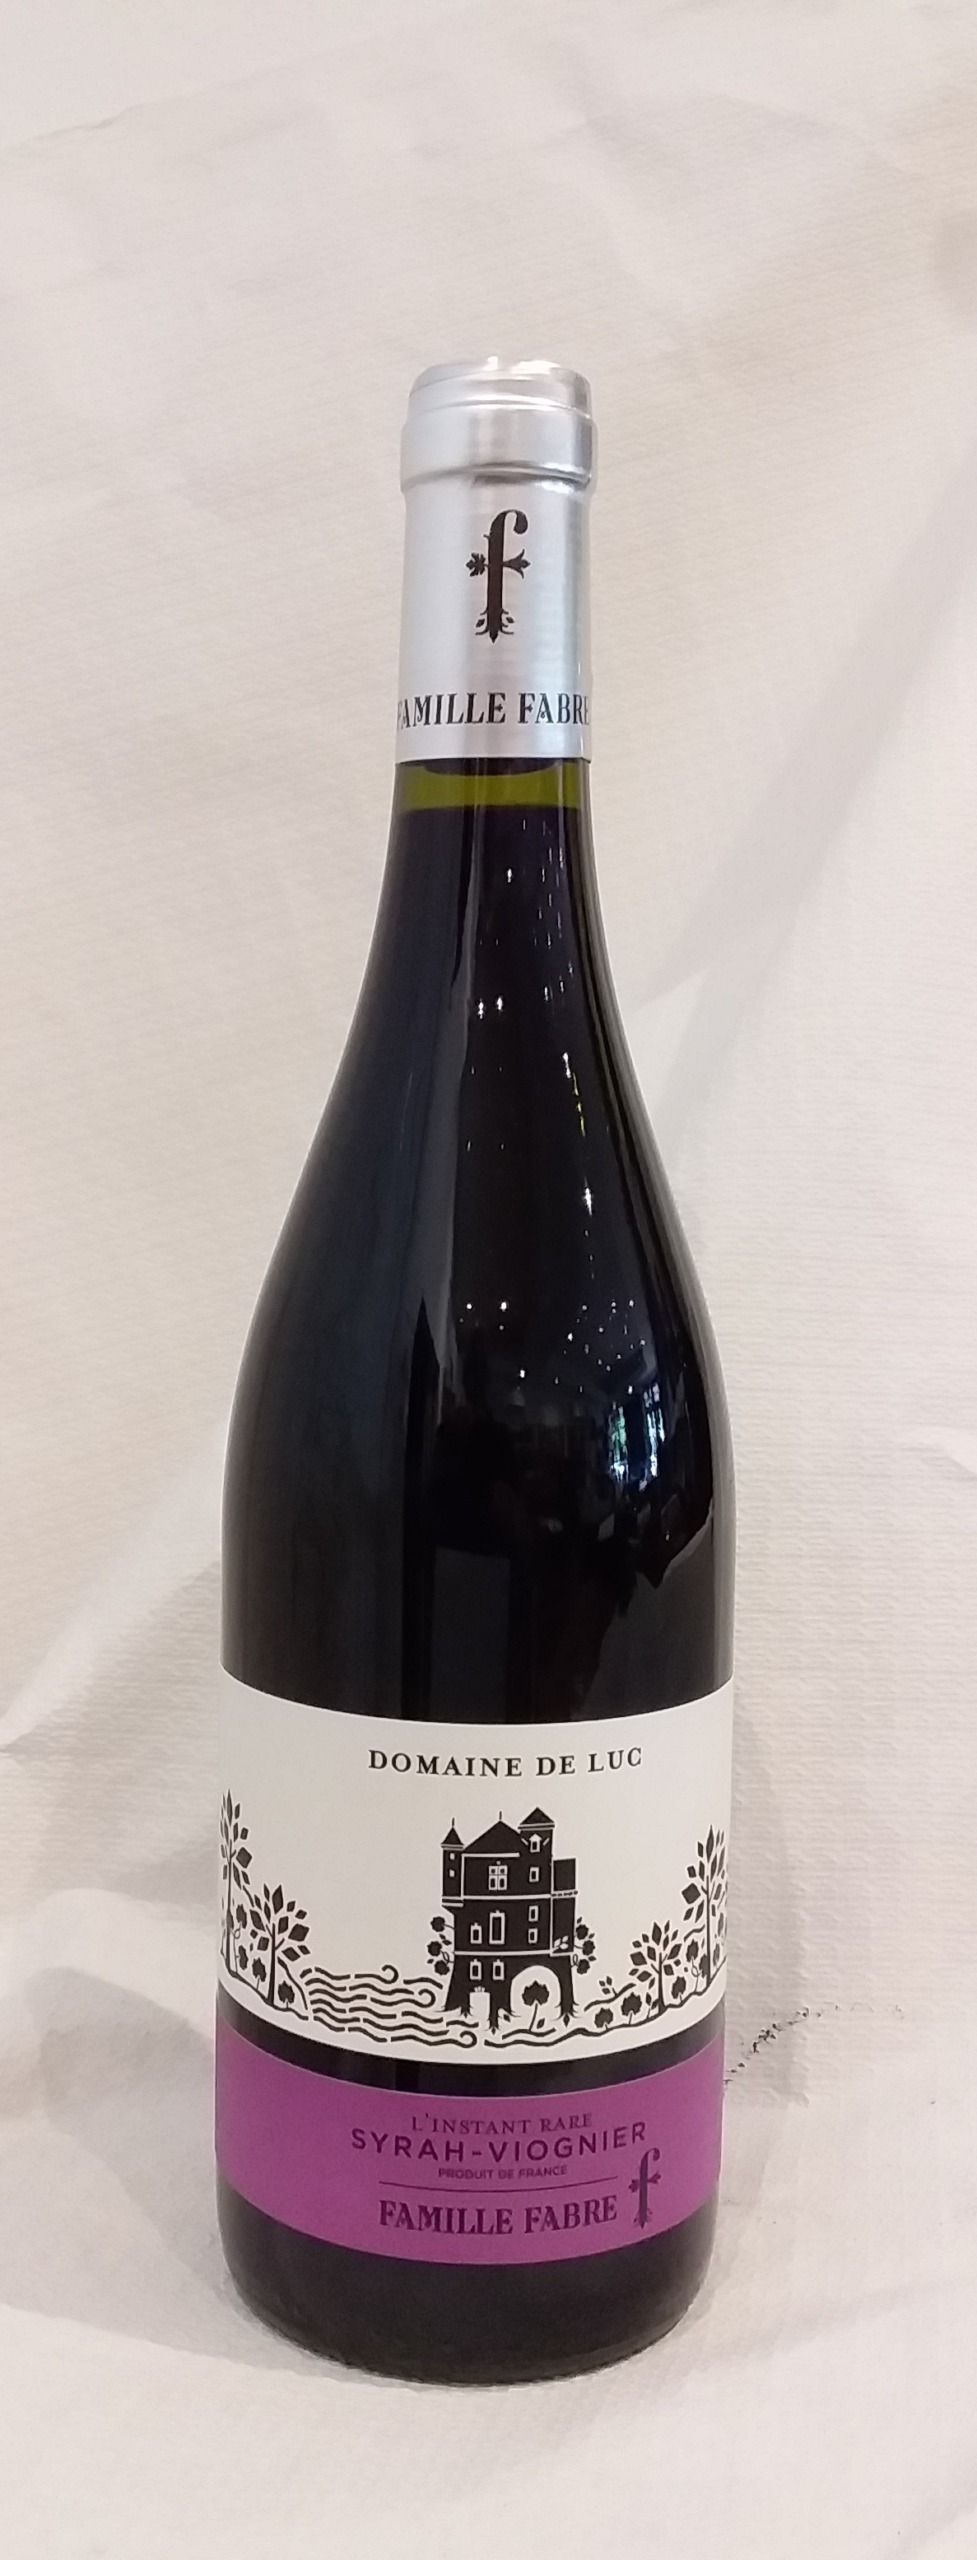 Vin rouge - IGP - Languedoc - Domaine de Luc - Syrah-viognier Famille Fabre - 2020